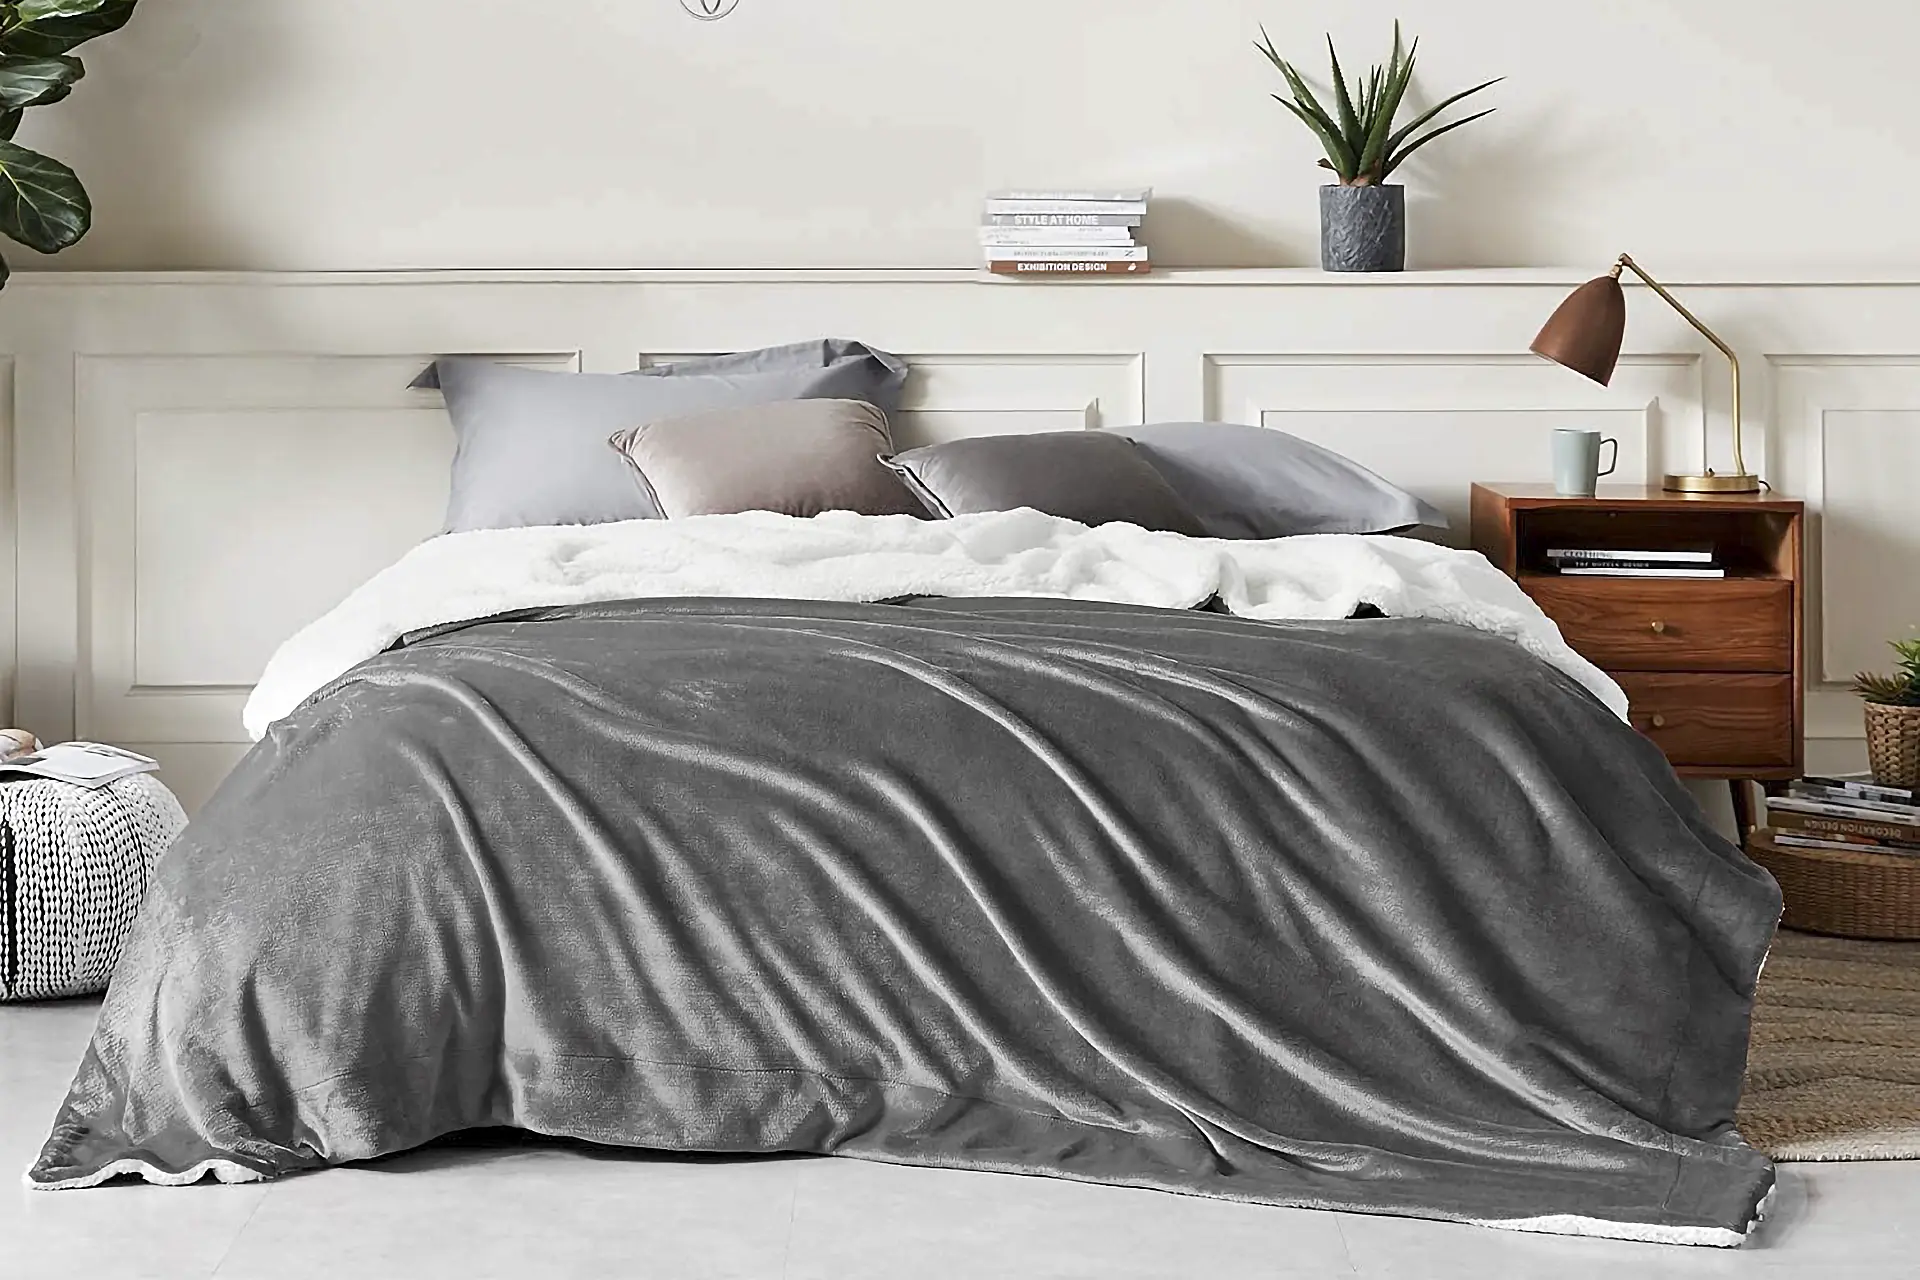 Lee más sobre el artículo Mantas y cobertores: Encuentra las mejores opciones para abrigarte y decorar tu hogar